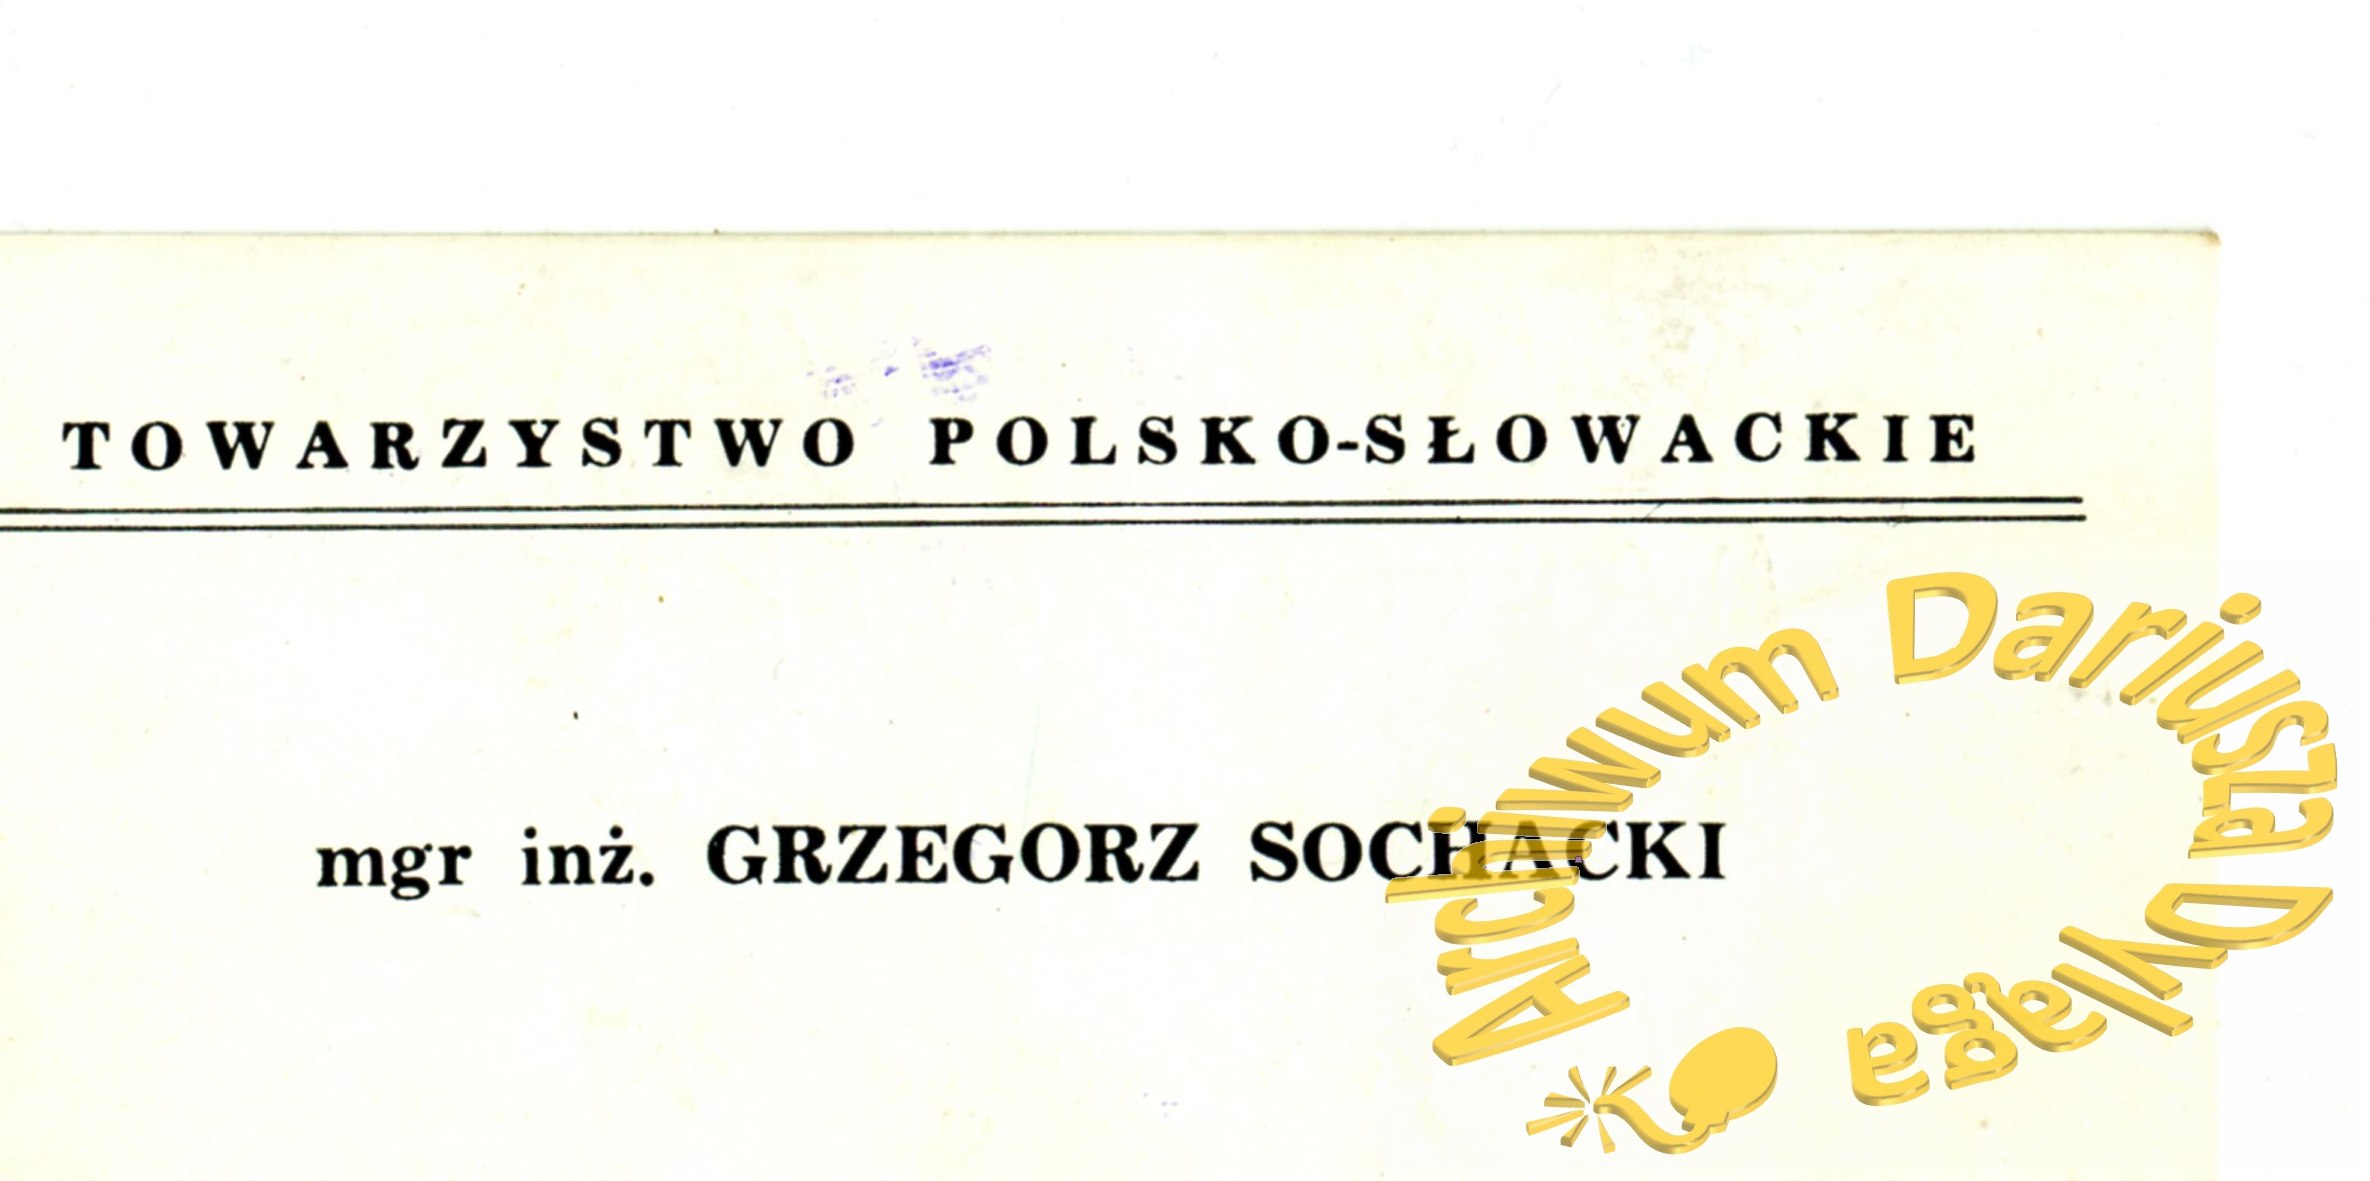 1994-psochacki